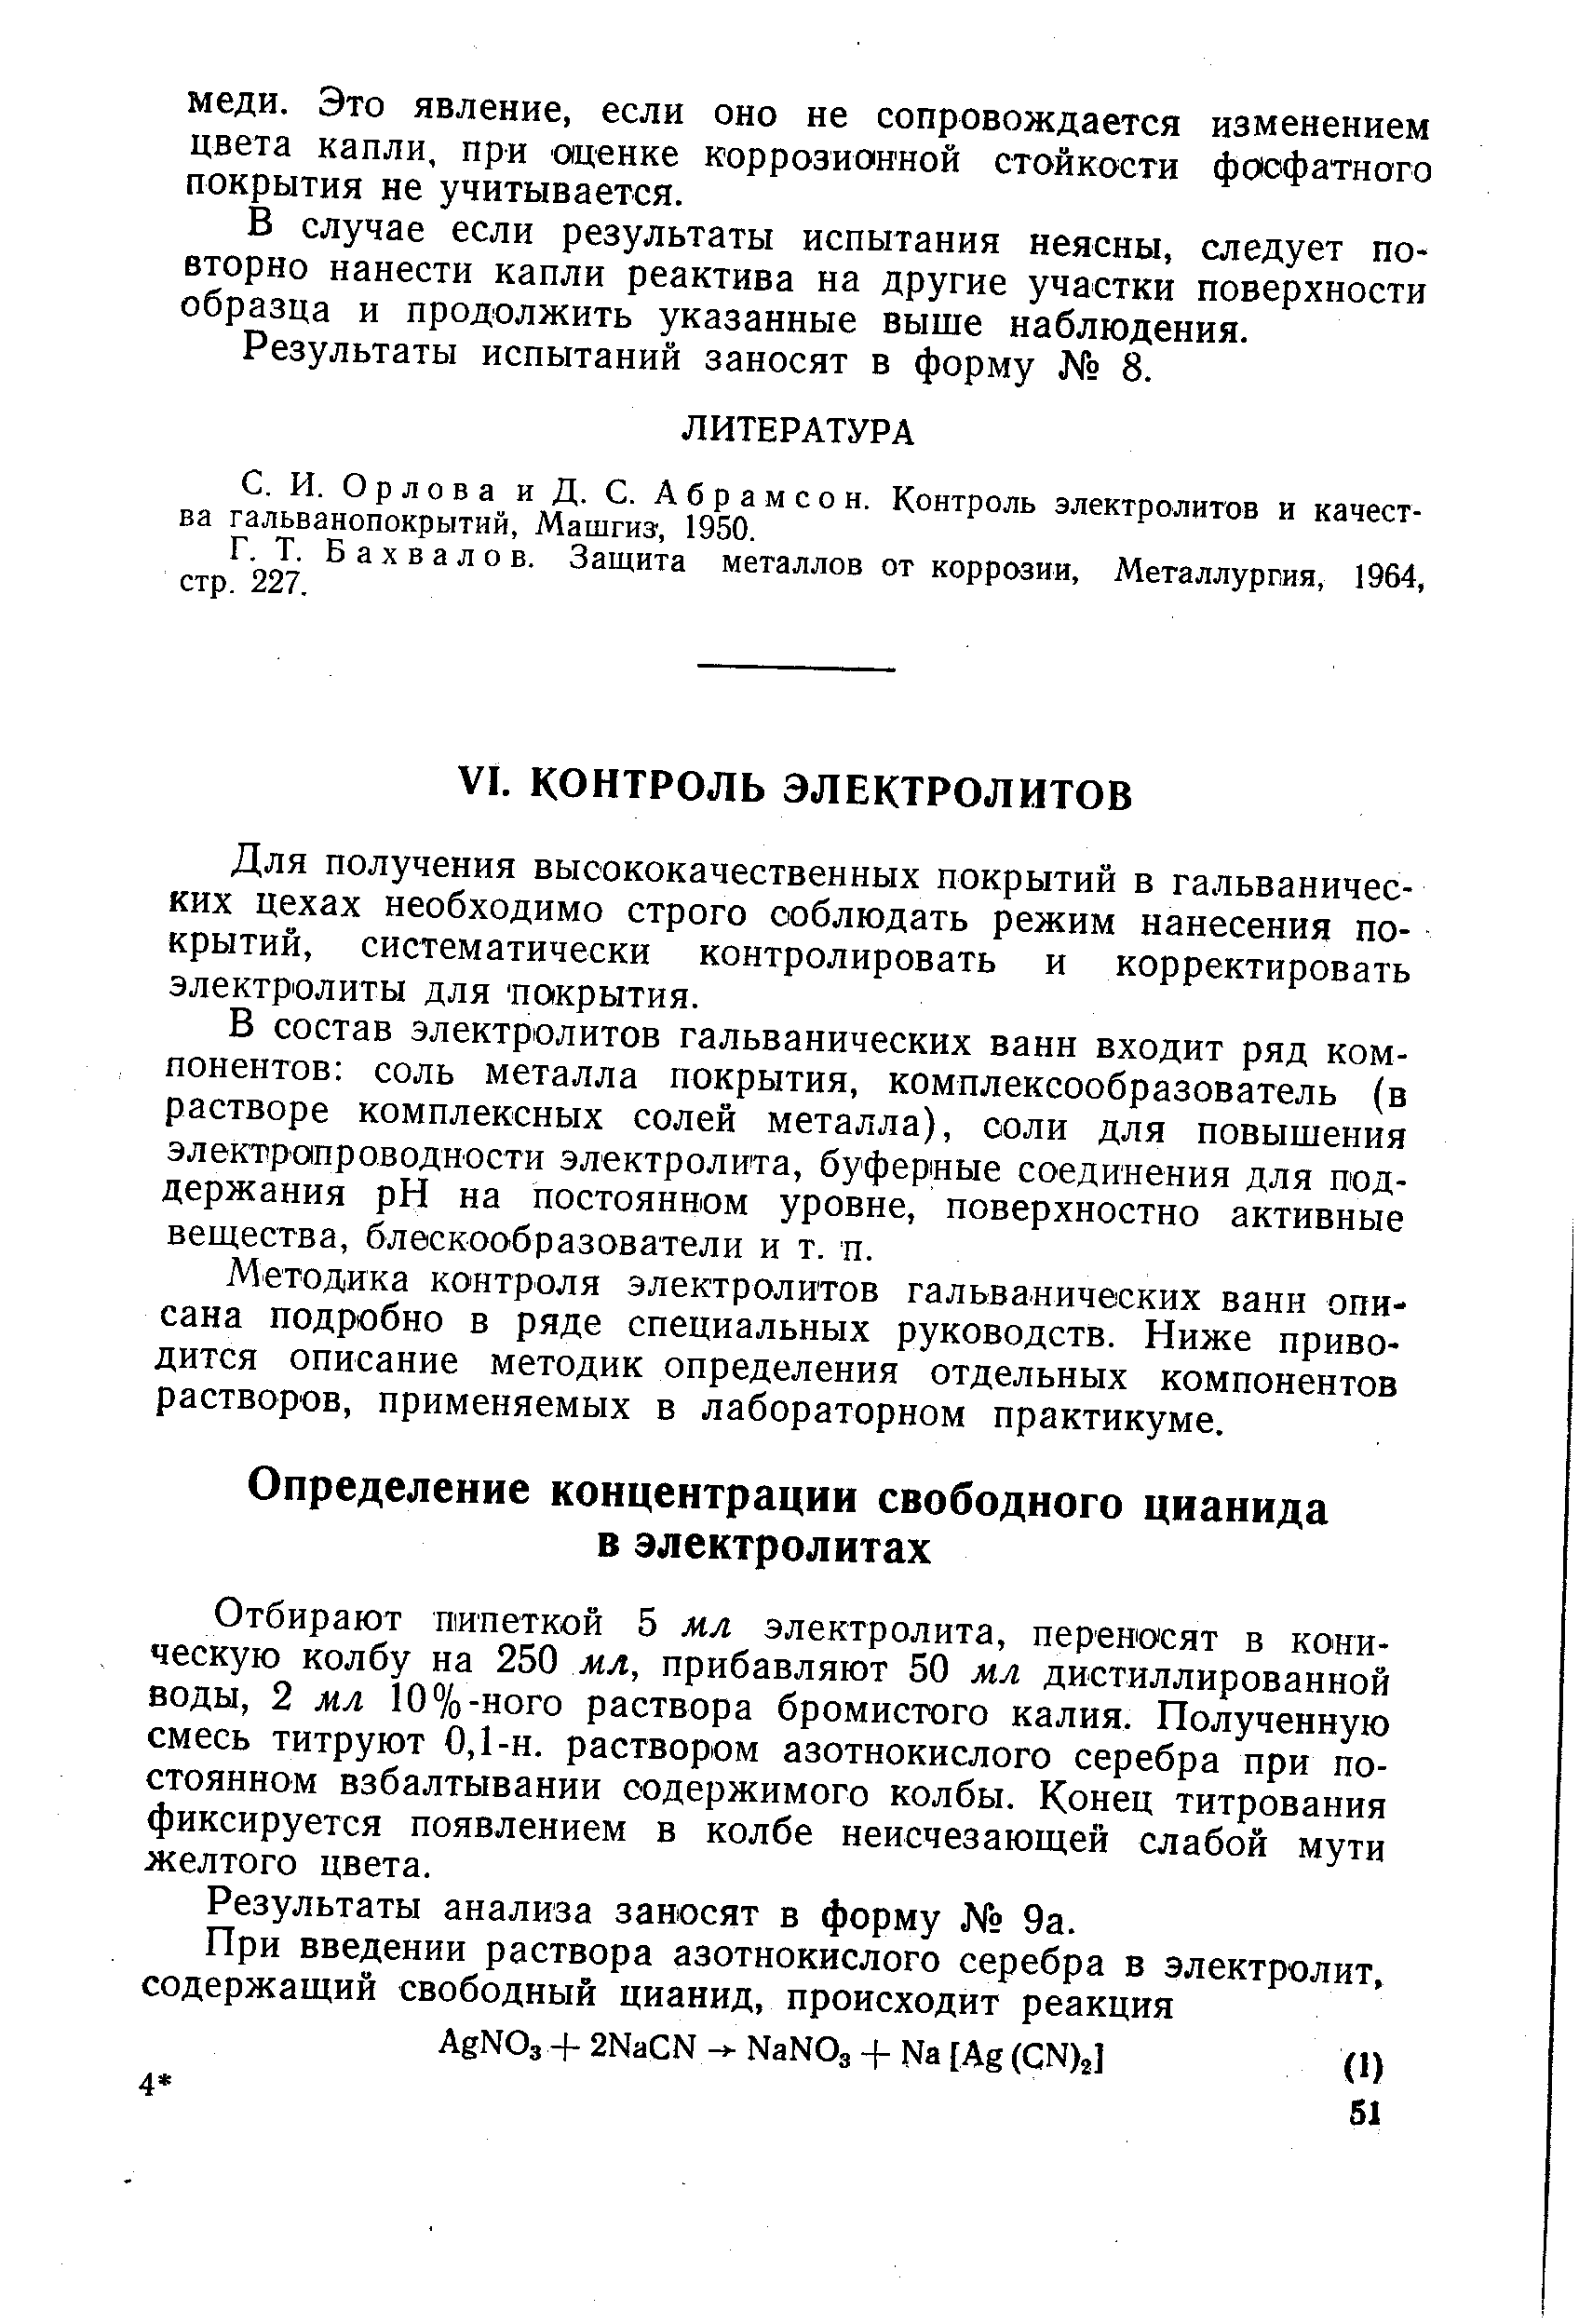 Орлова и Д. С. Абрамсон. Контроль электролитов и качества гальванопокрытий, Машгиз, 1950.
